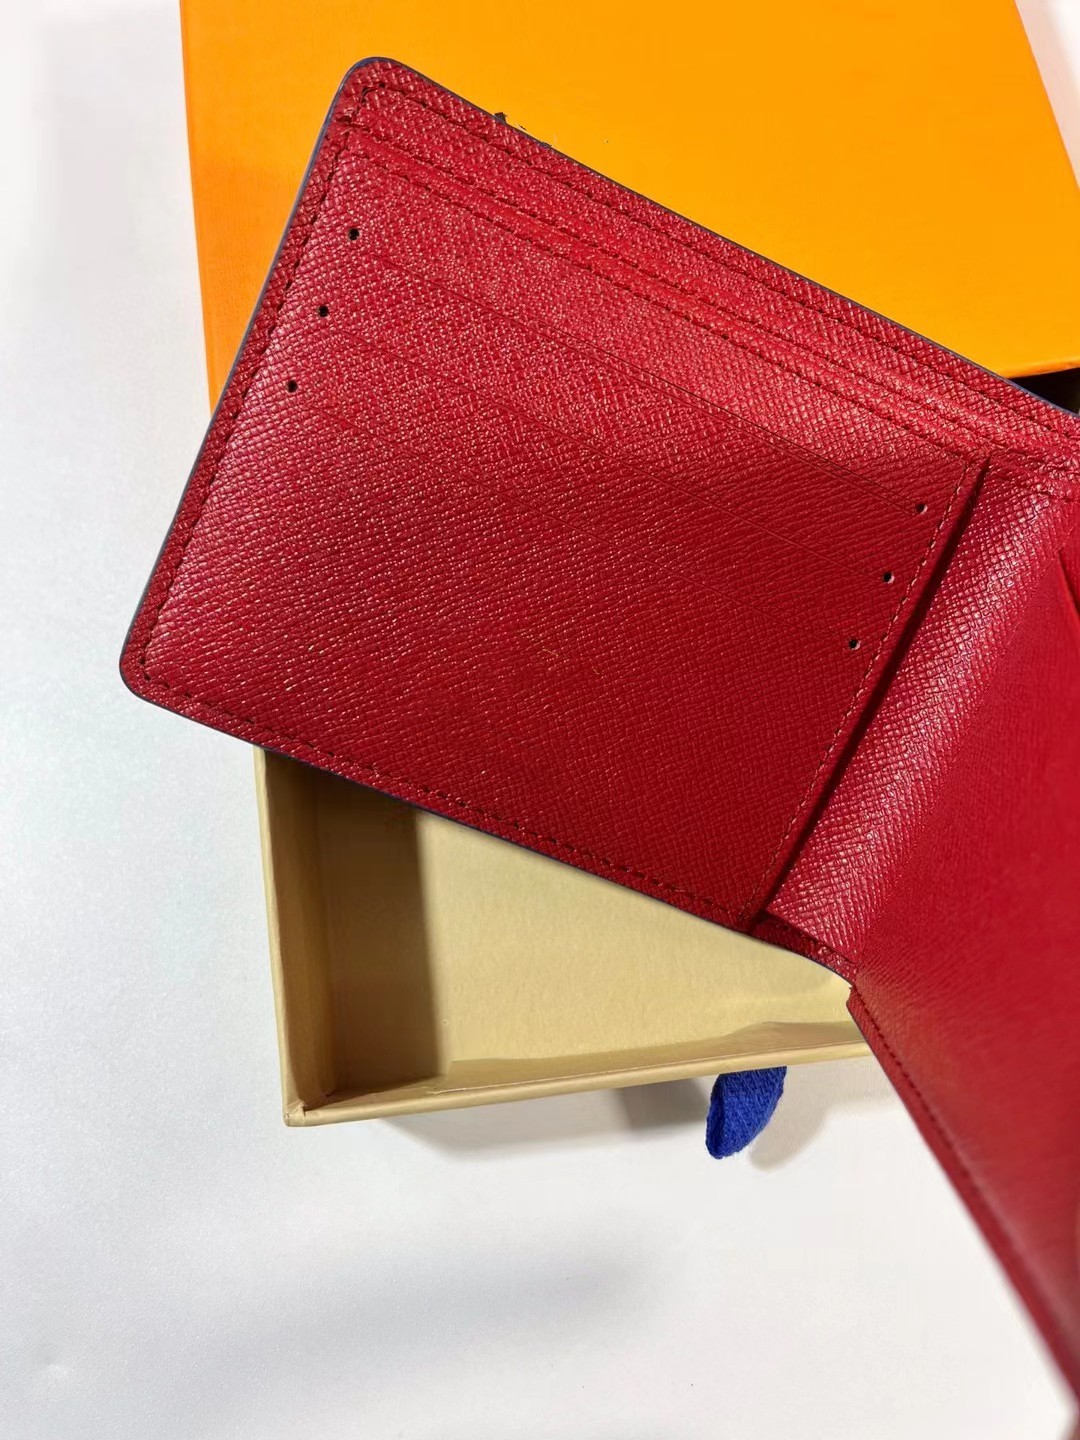 Hommes sac à main de luxe en cuir hommes portefeuilles créateur de mode portefeuille marque rétro classique porte-cartes femmes pochette unisexe 284h